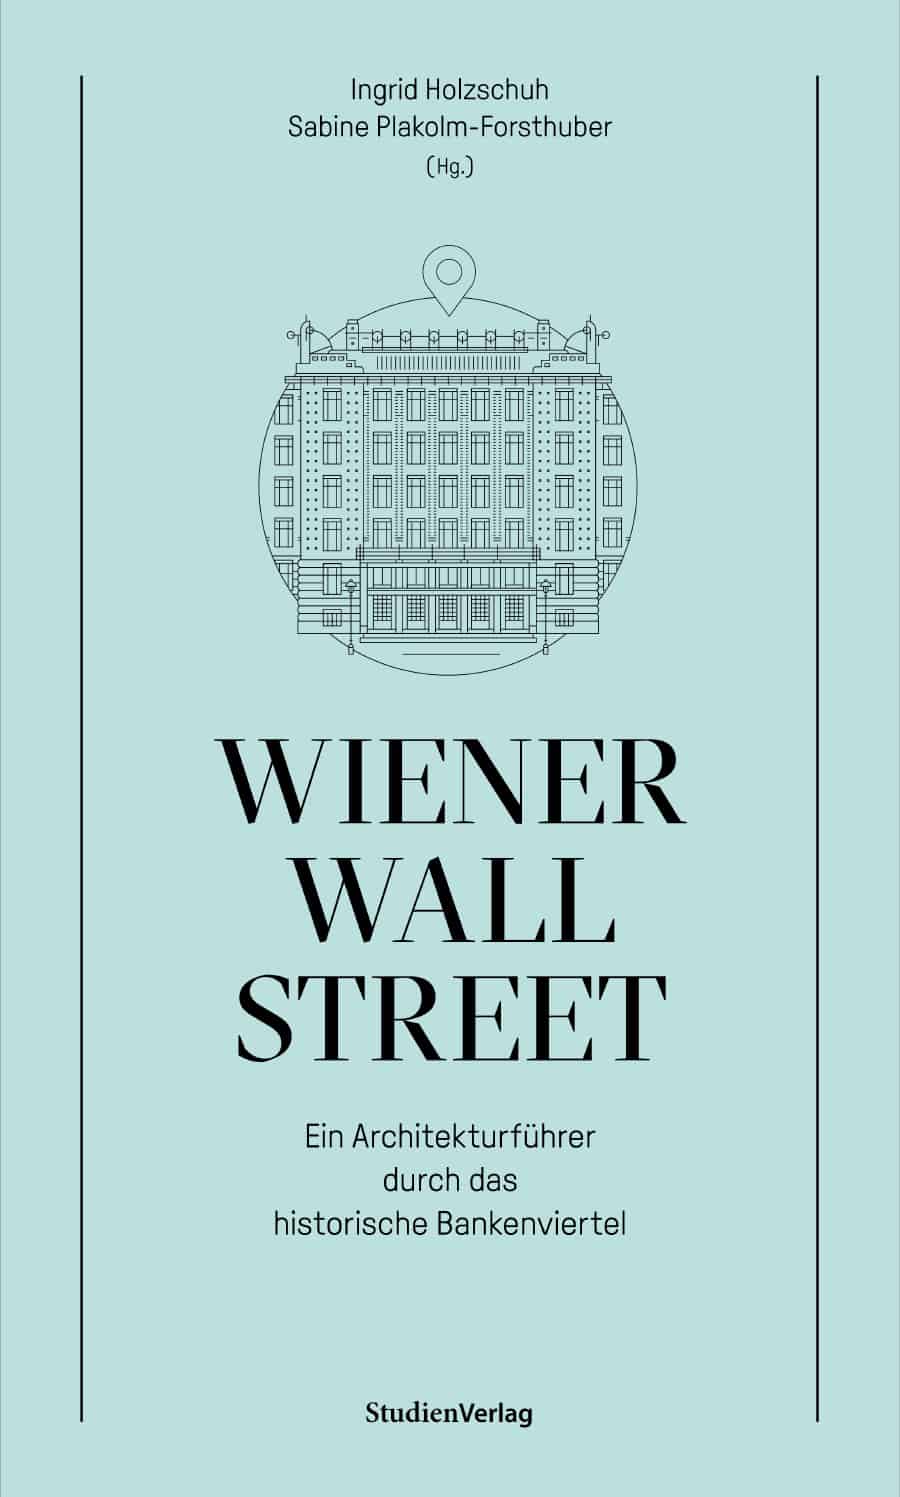 Wiener Wall Street – Ein Architekturführer durch das historische Bankenviertel